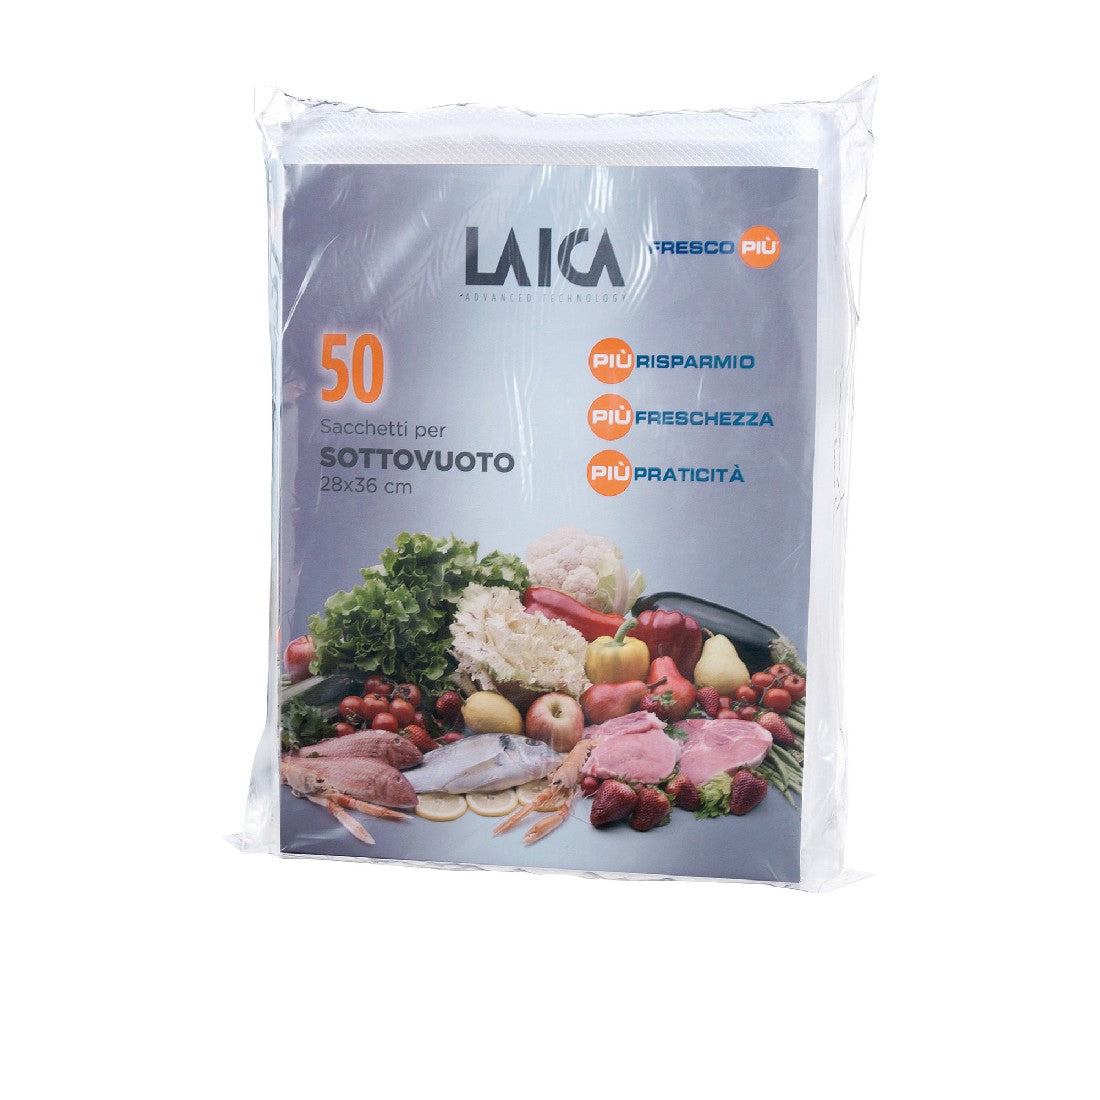 Laica Vacuum Bags - Pk Of 50 - 28x36cm